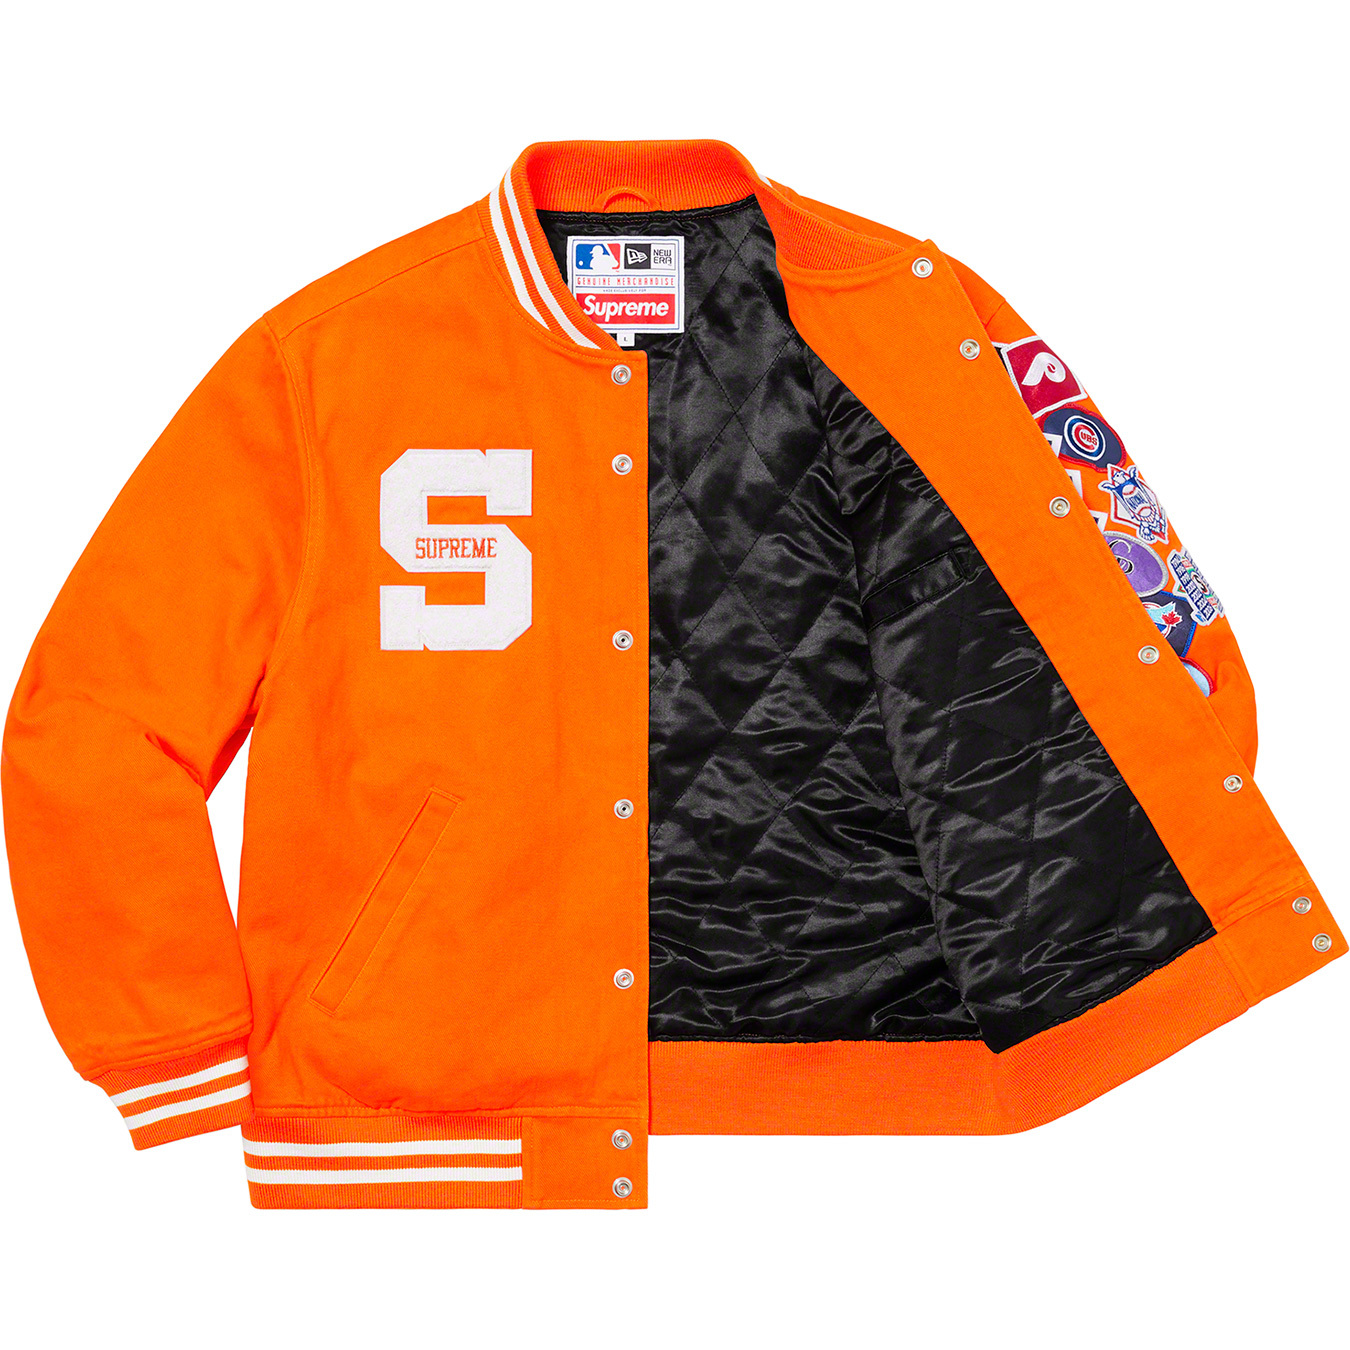 Supreme/New Era/MLB Varsity Jacket  M